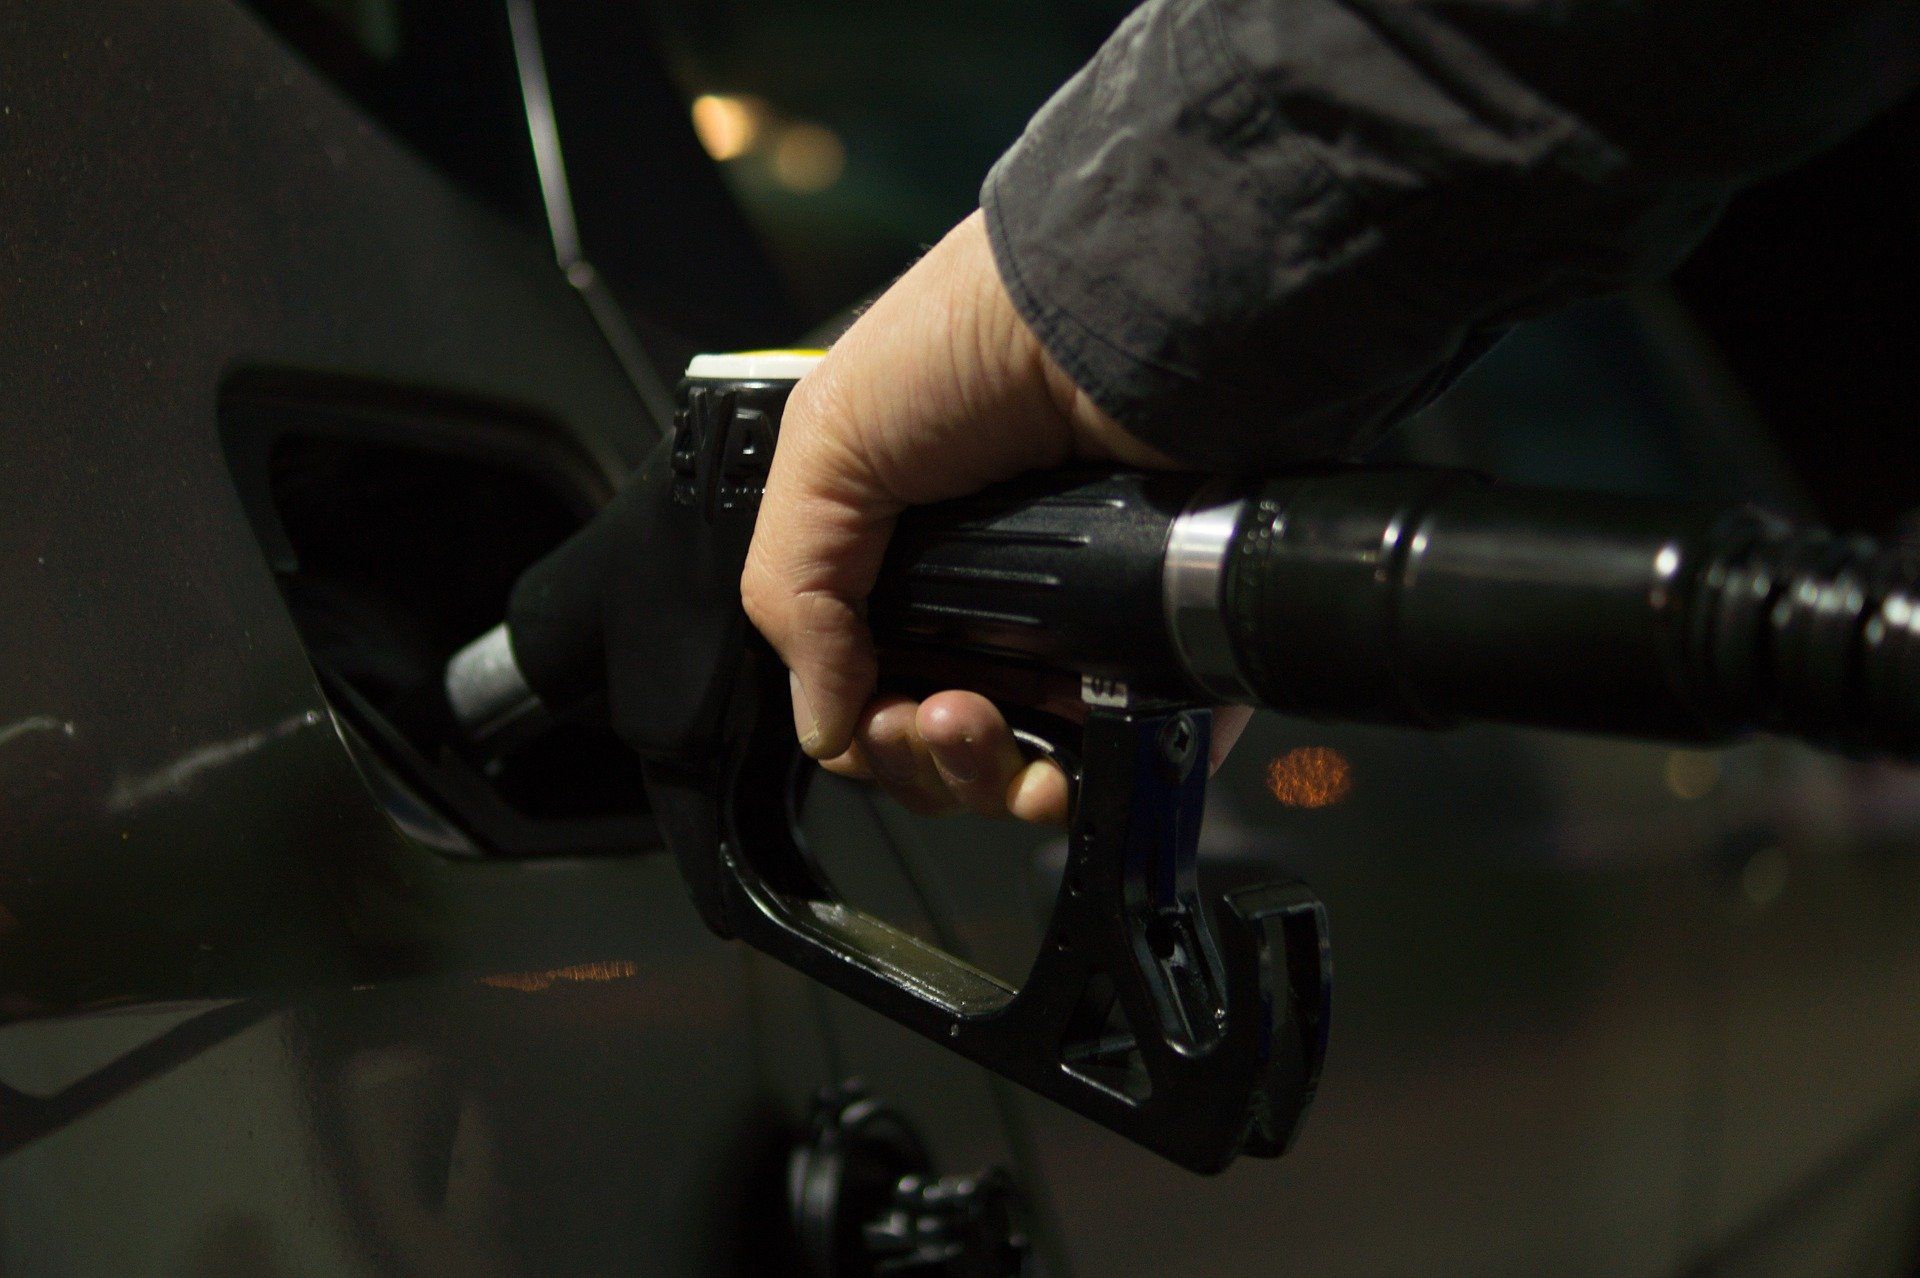 Fuel price May 27, 2022: Petrol Rs 96.72, diesel Rs 89.62 in Delhi